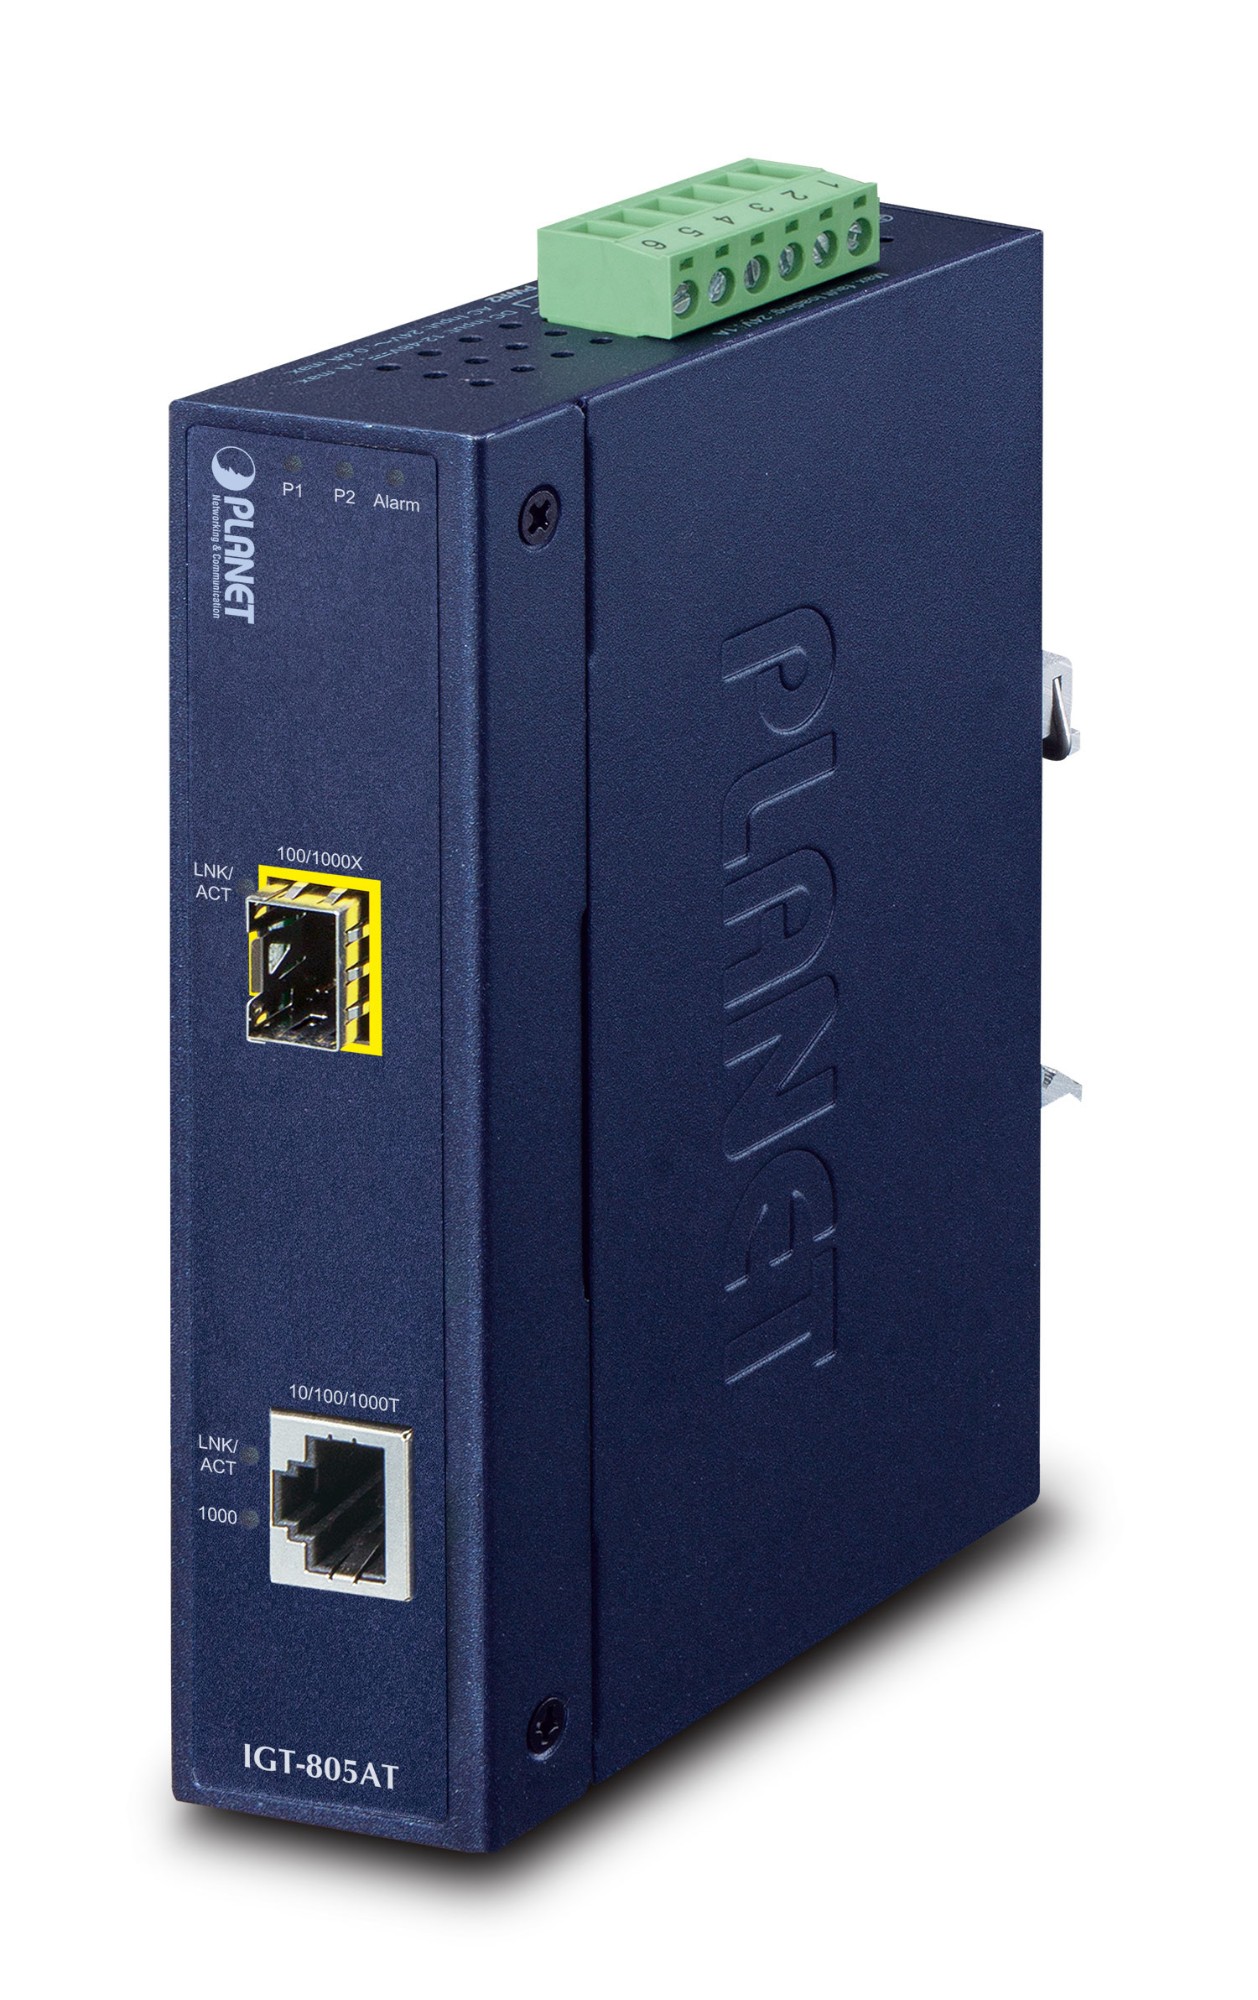 PLANET IGT-805AT network media converter 1000 Mbit/s Blue